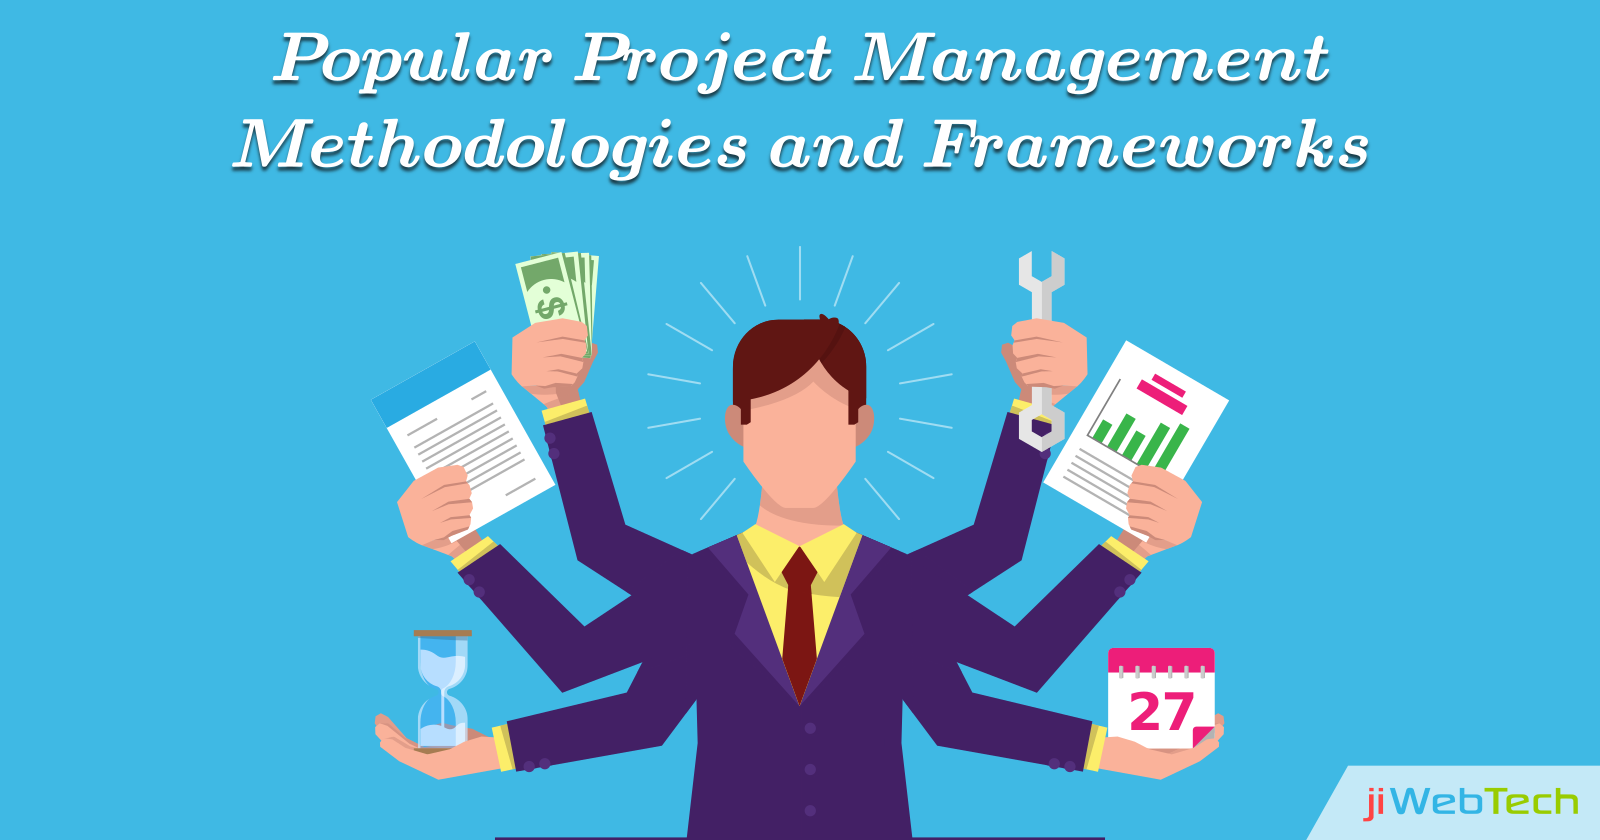 Popular Project Management Methodologies and Frameworks